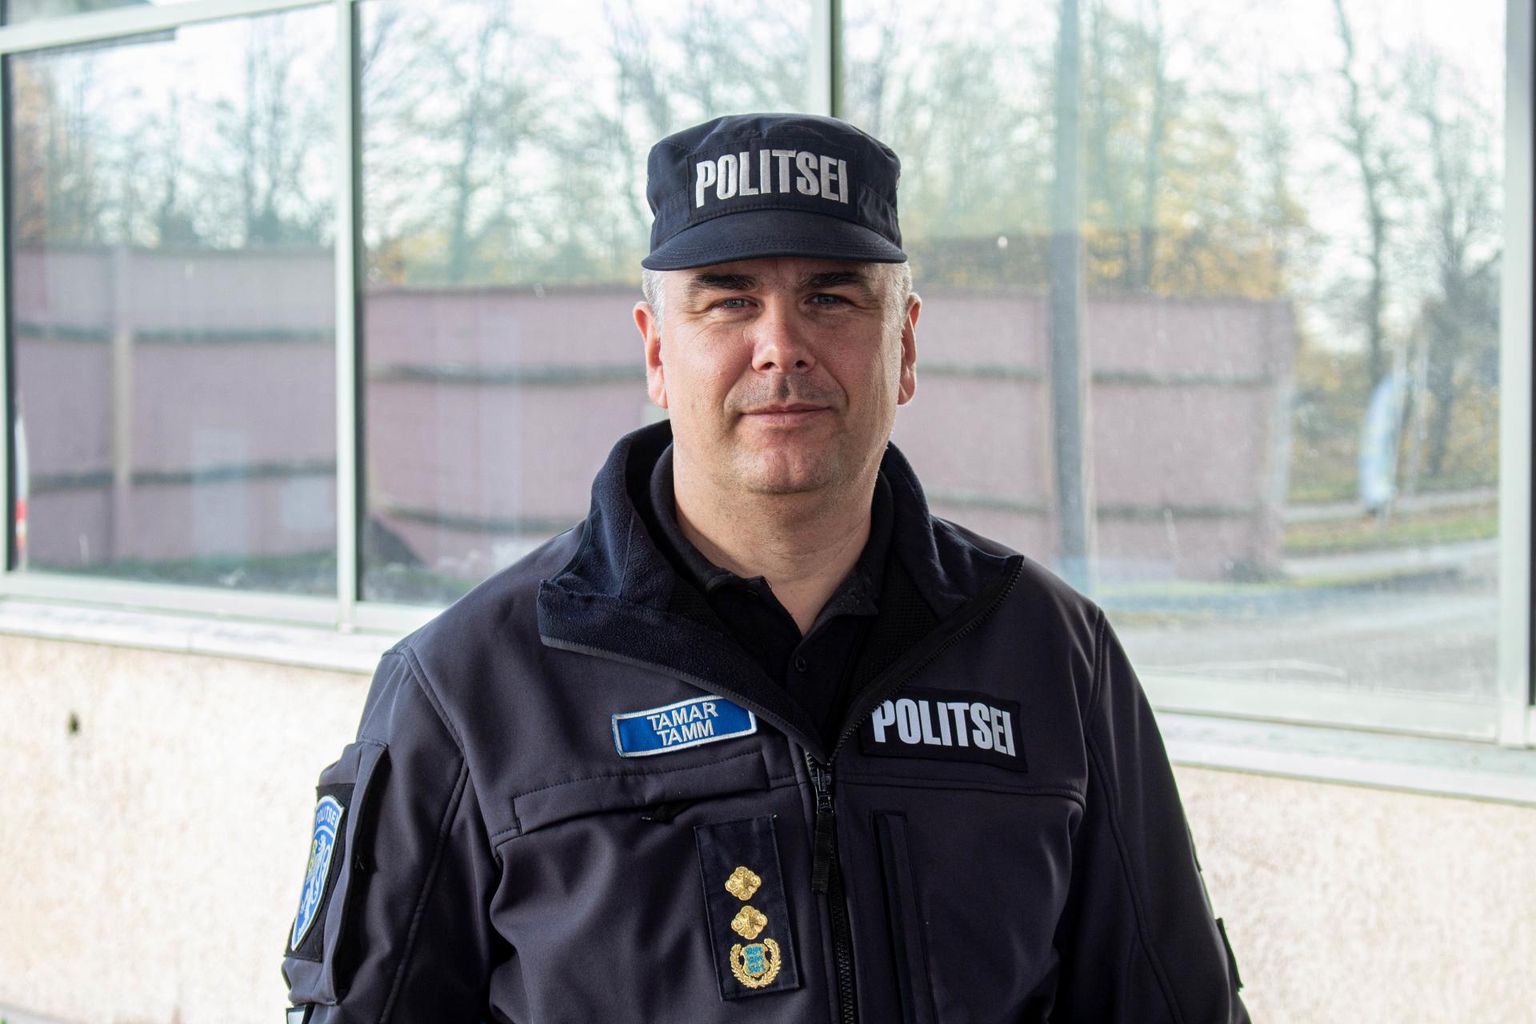 Valgamaal on 45-aastaseid ja vanemaid politseiametnikke 49 protsenti. Võru- ja Põlvamaal on nende osakaal tagasihoidlikum. Põlvat aitab eeskätt Tartu lähedus, tõdeb Kagu politseijaoskonna juht Tamar Tamm.